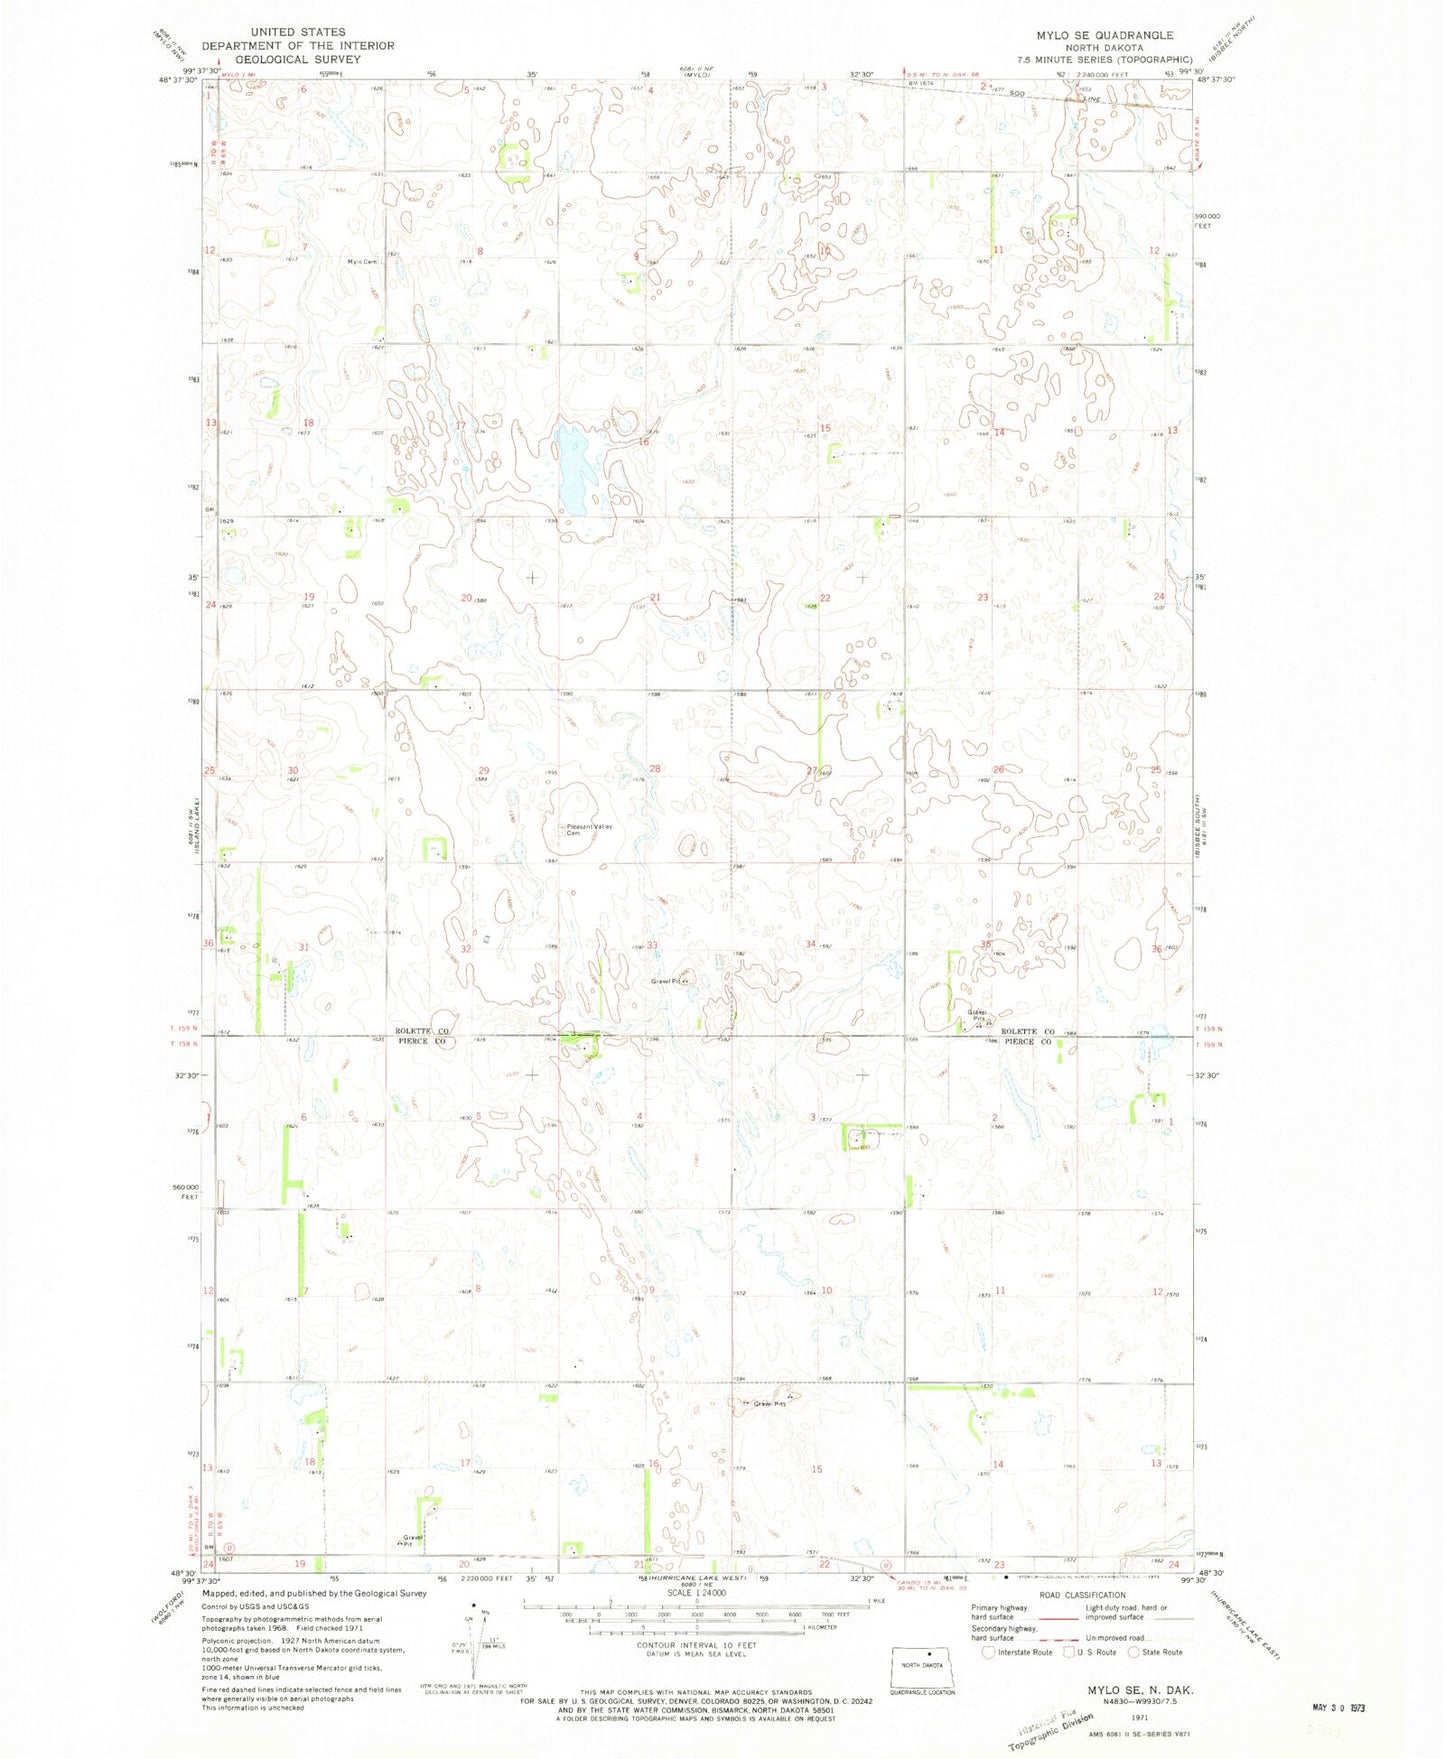 Classic USGS Mylo SE North Dakota 7.5'x7.5' Topo Map Image